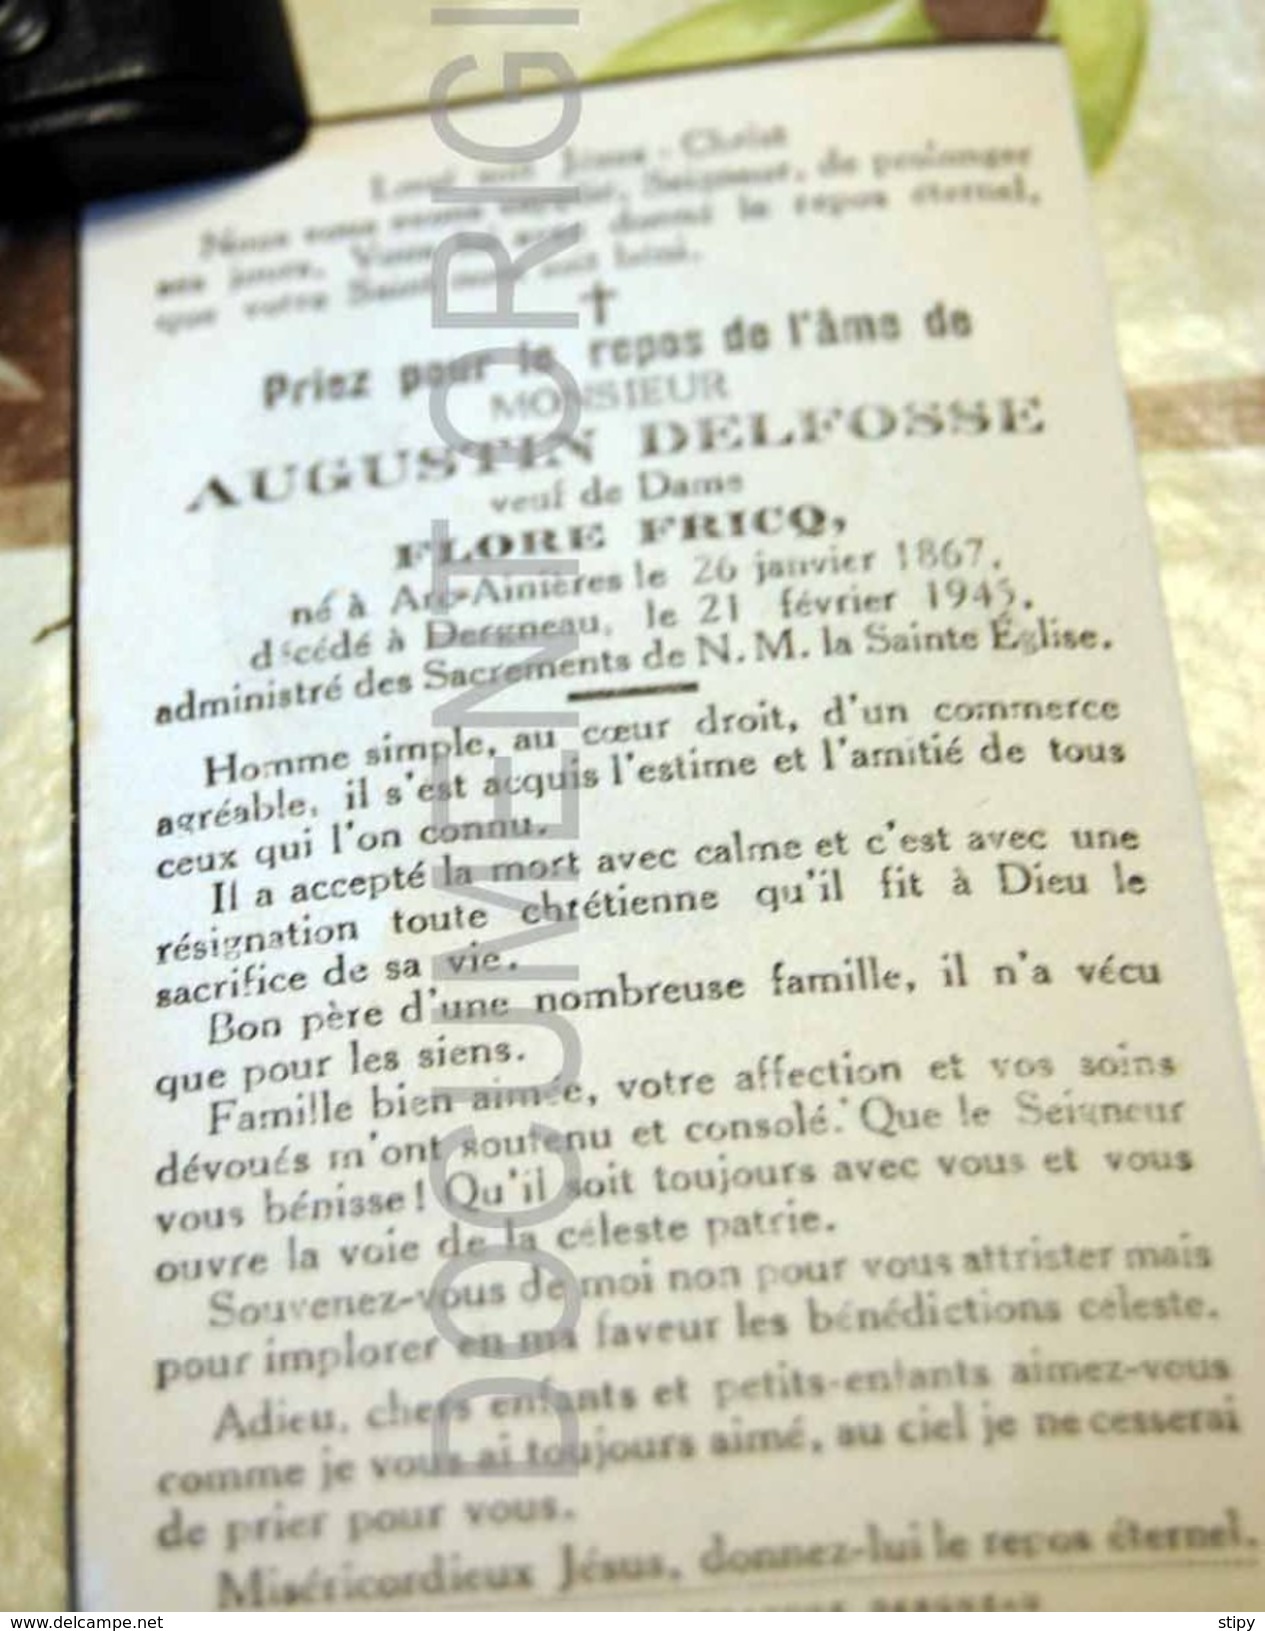 Augustin Delfosse / Flore Fricq Arc-ainières 1867 Dergneau 1943 - Frasnes-lez-Anvaing